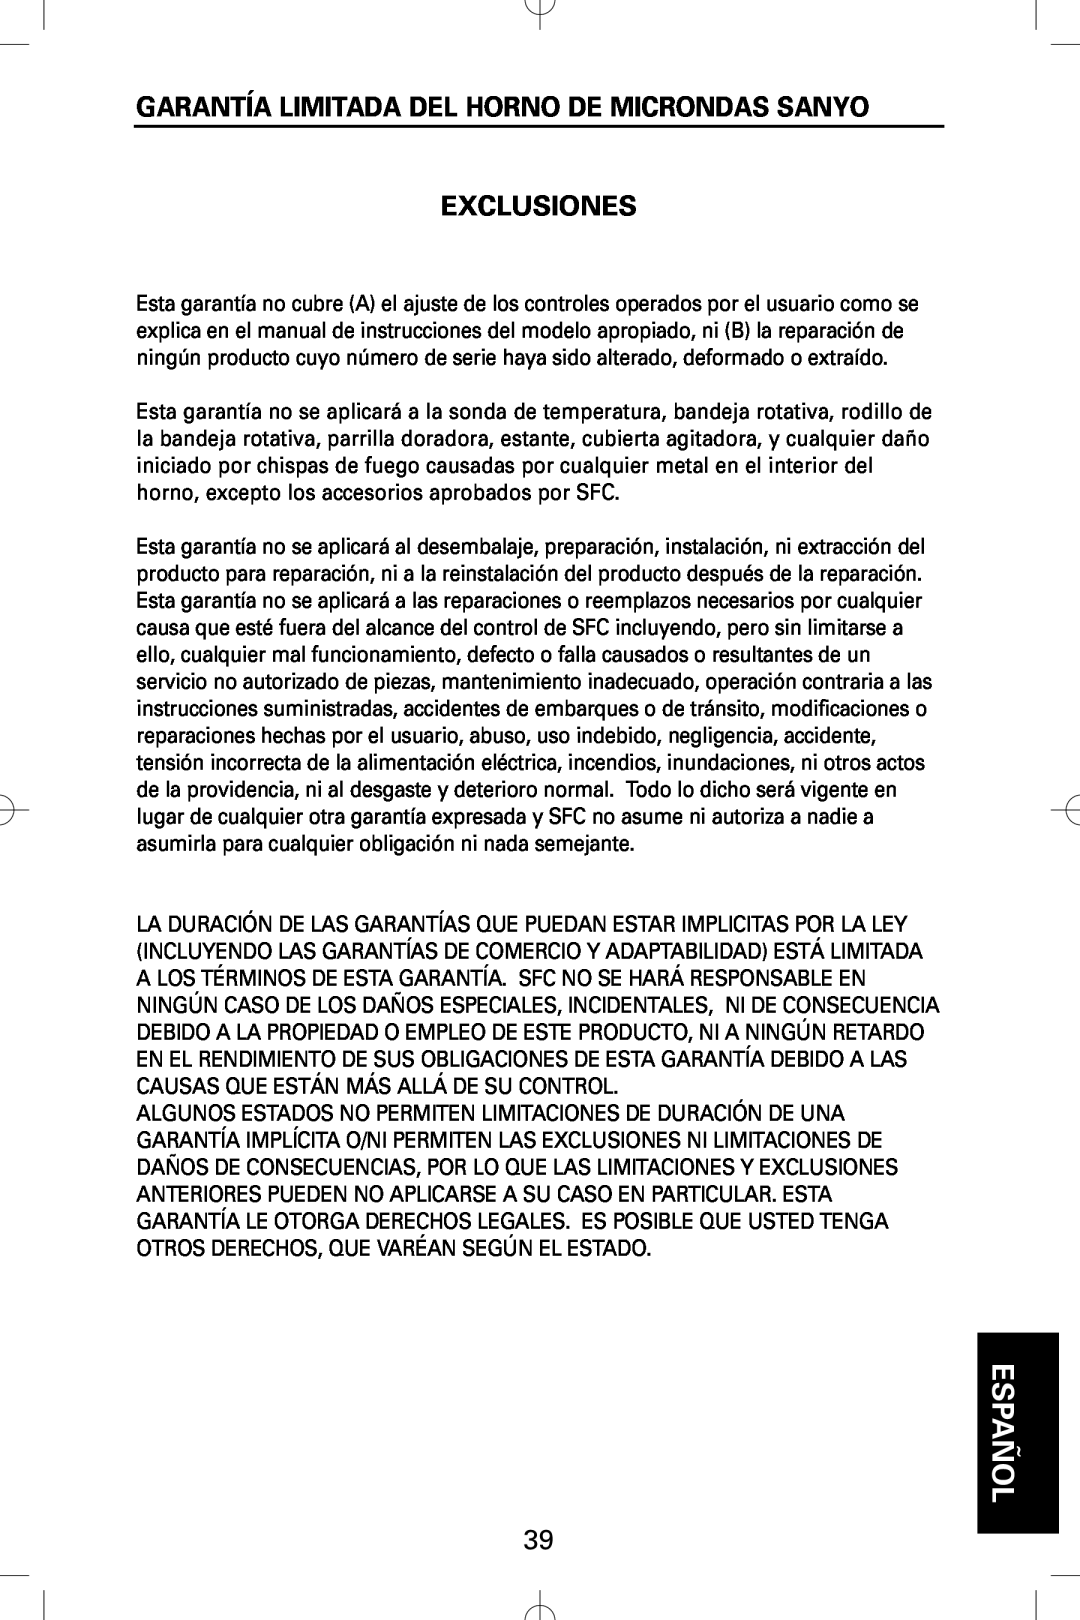 Sanyo EM-S5002W instruction manual Garantía Limitada Del Horno De Microndas Sanyo, Exclusiones, Español 